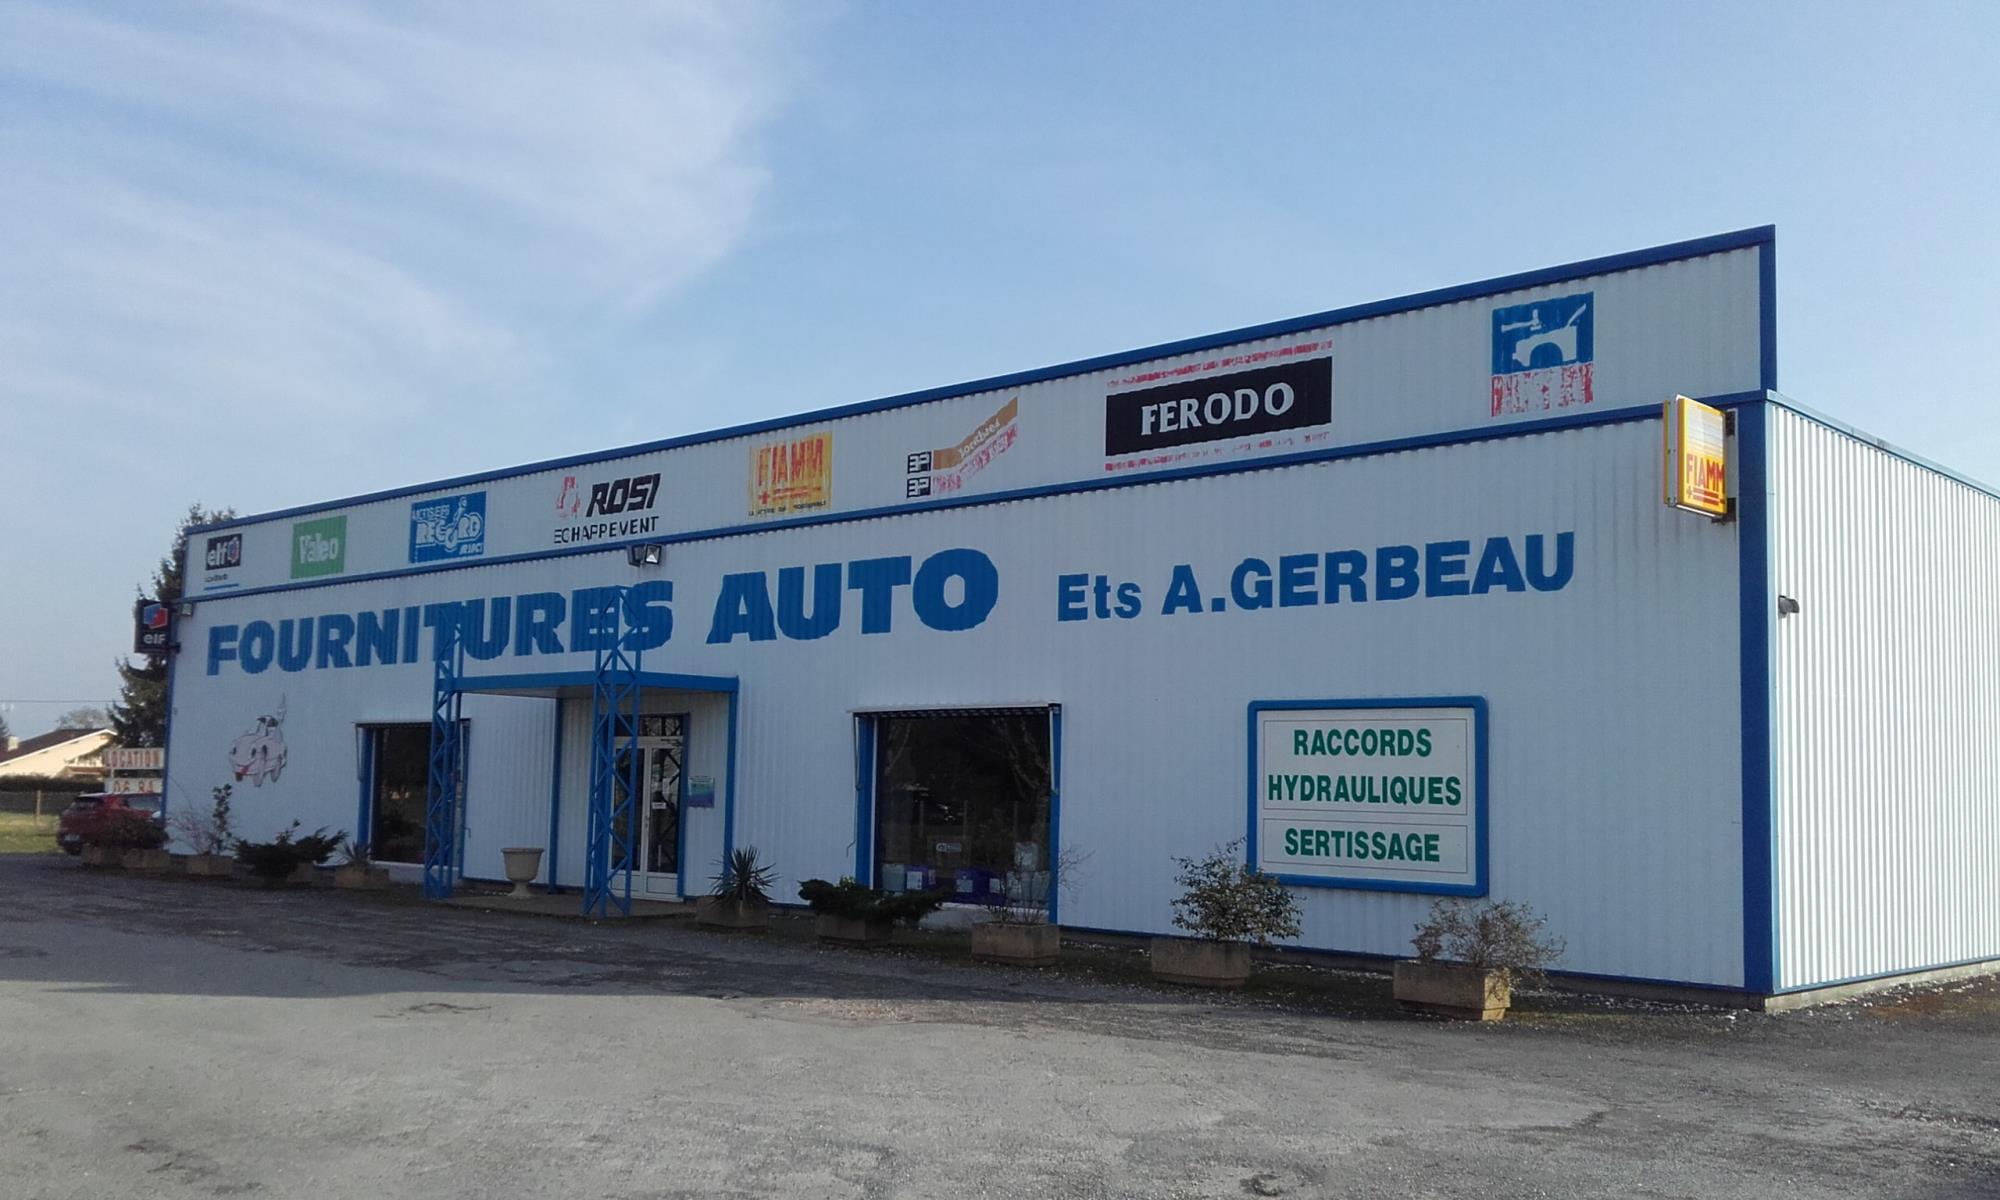 (c) Gerbeau-pieces-autos.fr